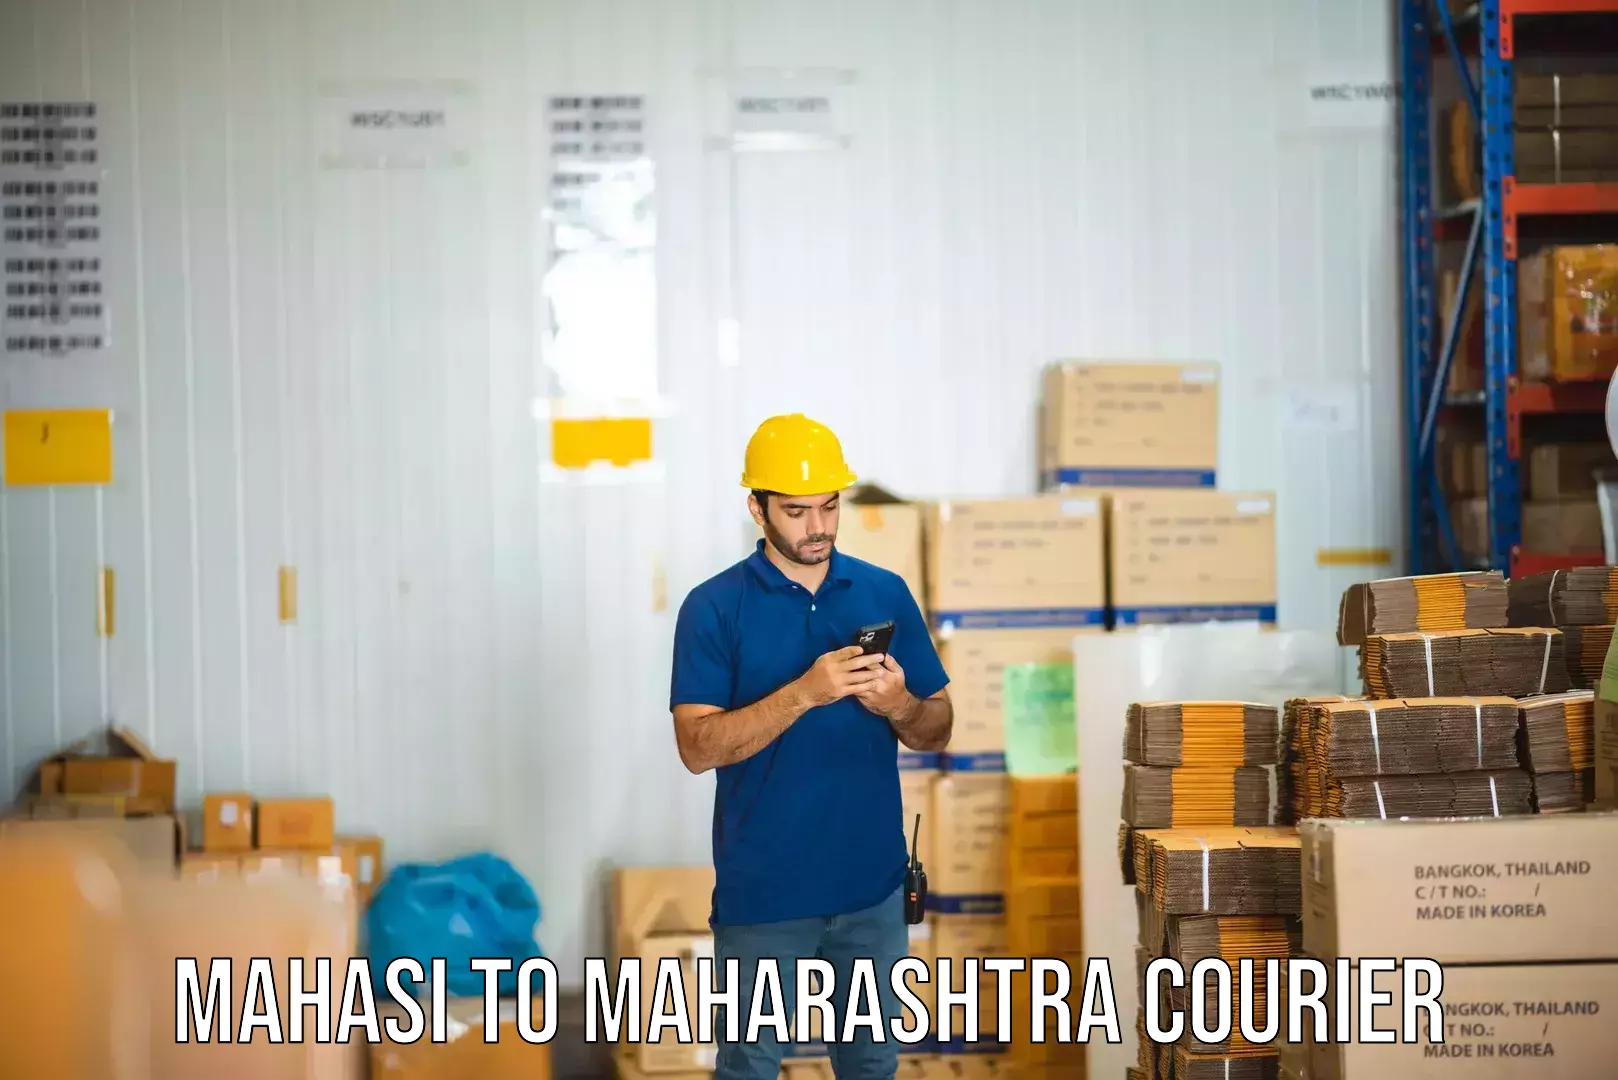 Enhanced delivery experience Mahasi to Maharashtra